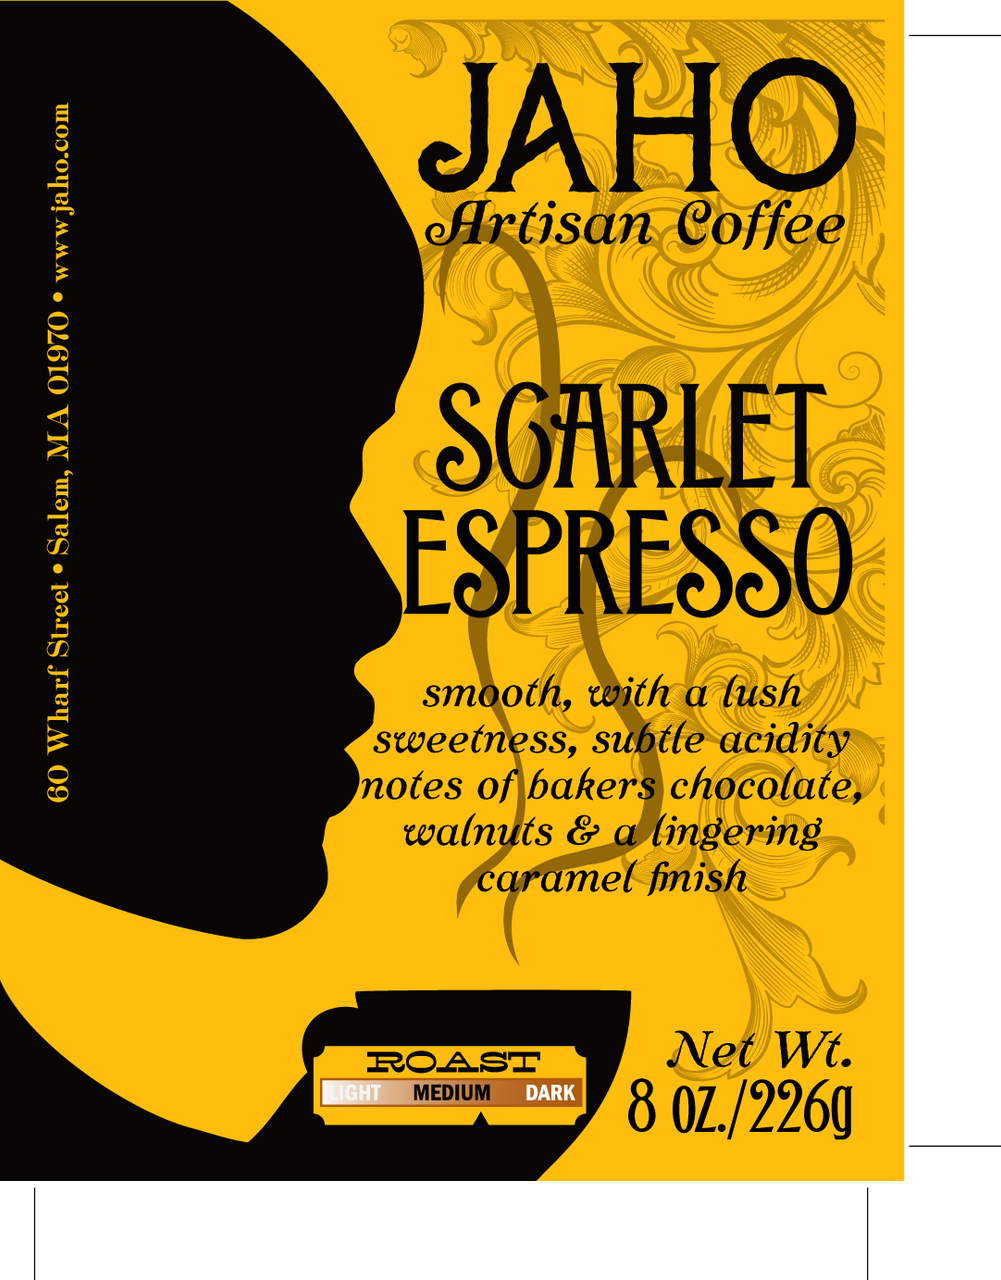 Scarlet Espresso